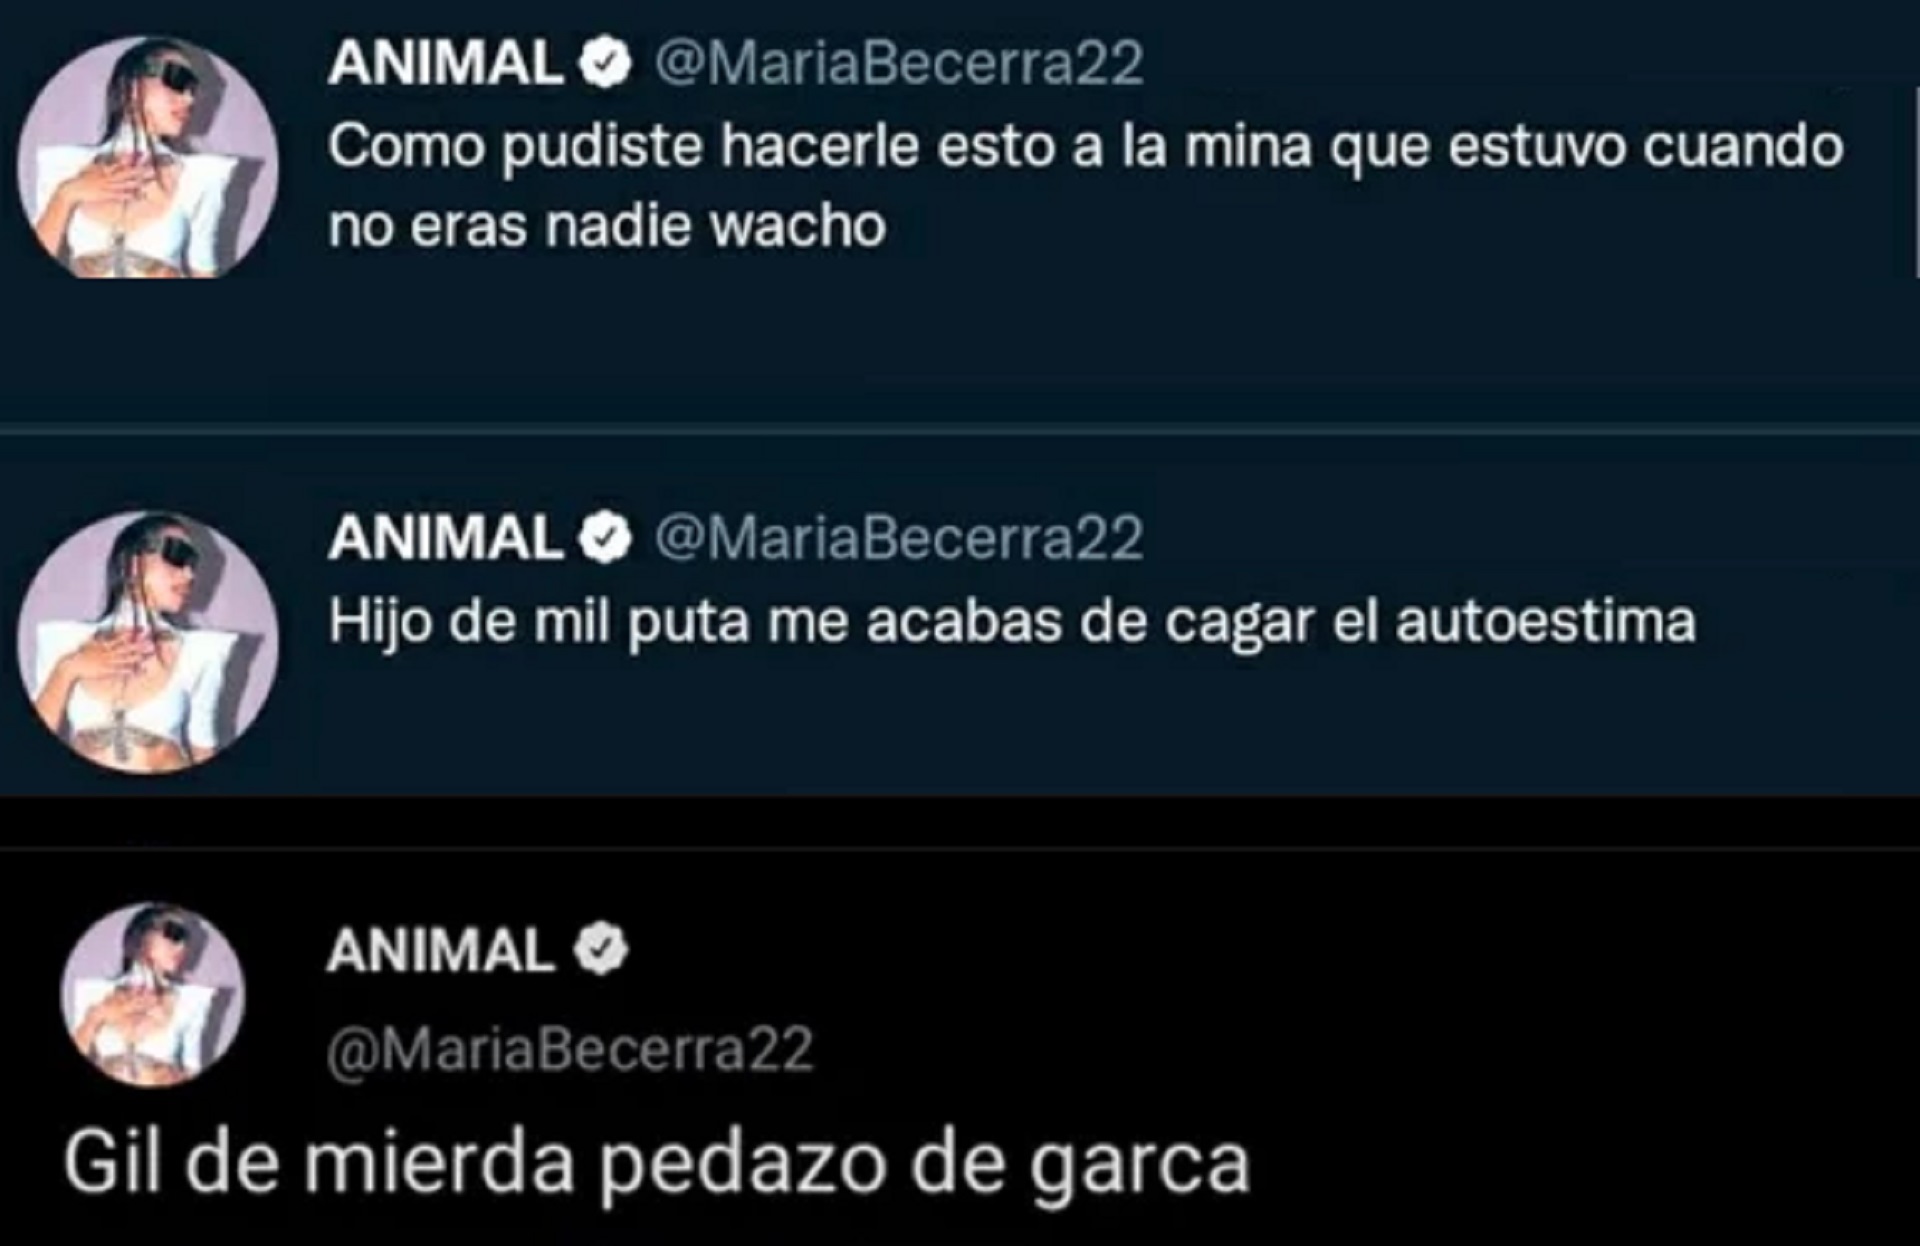 Los tweets de María Becerra contra Rusherking. Horas más tarde, los borró y ofreció una disculpa (Foto: Twitter)